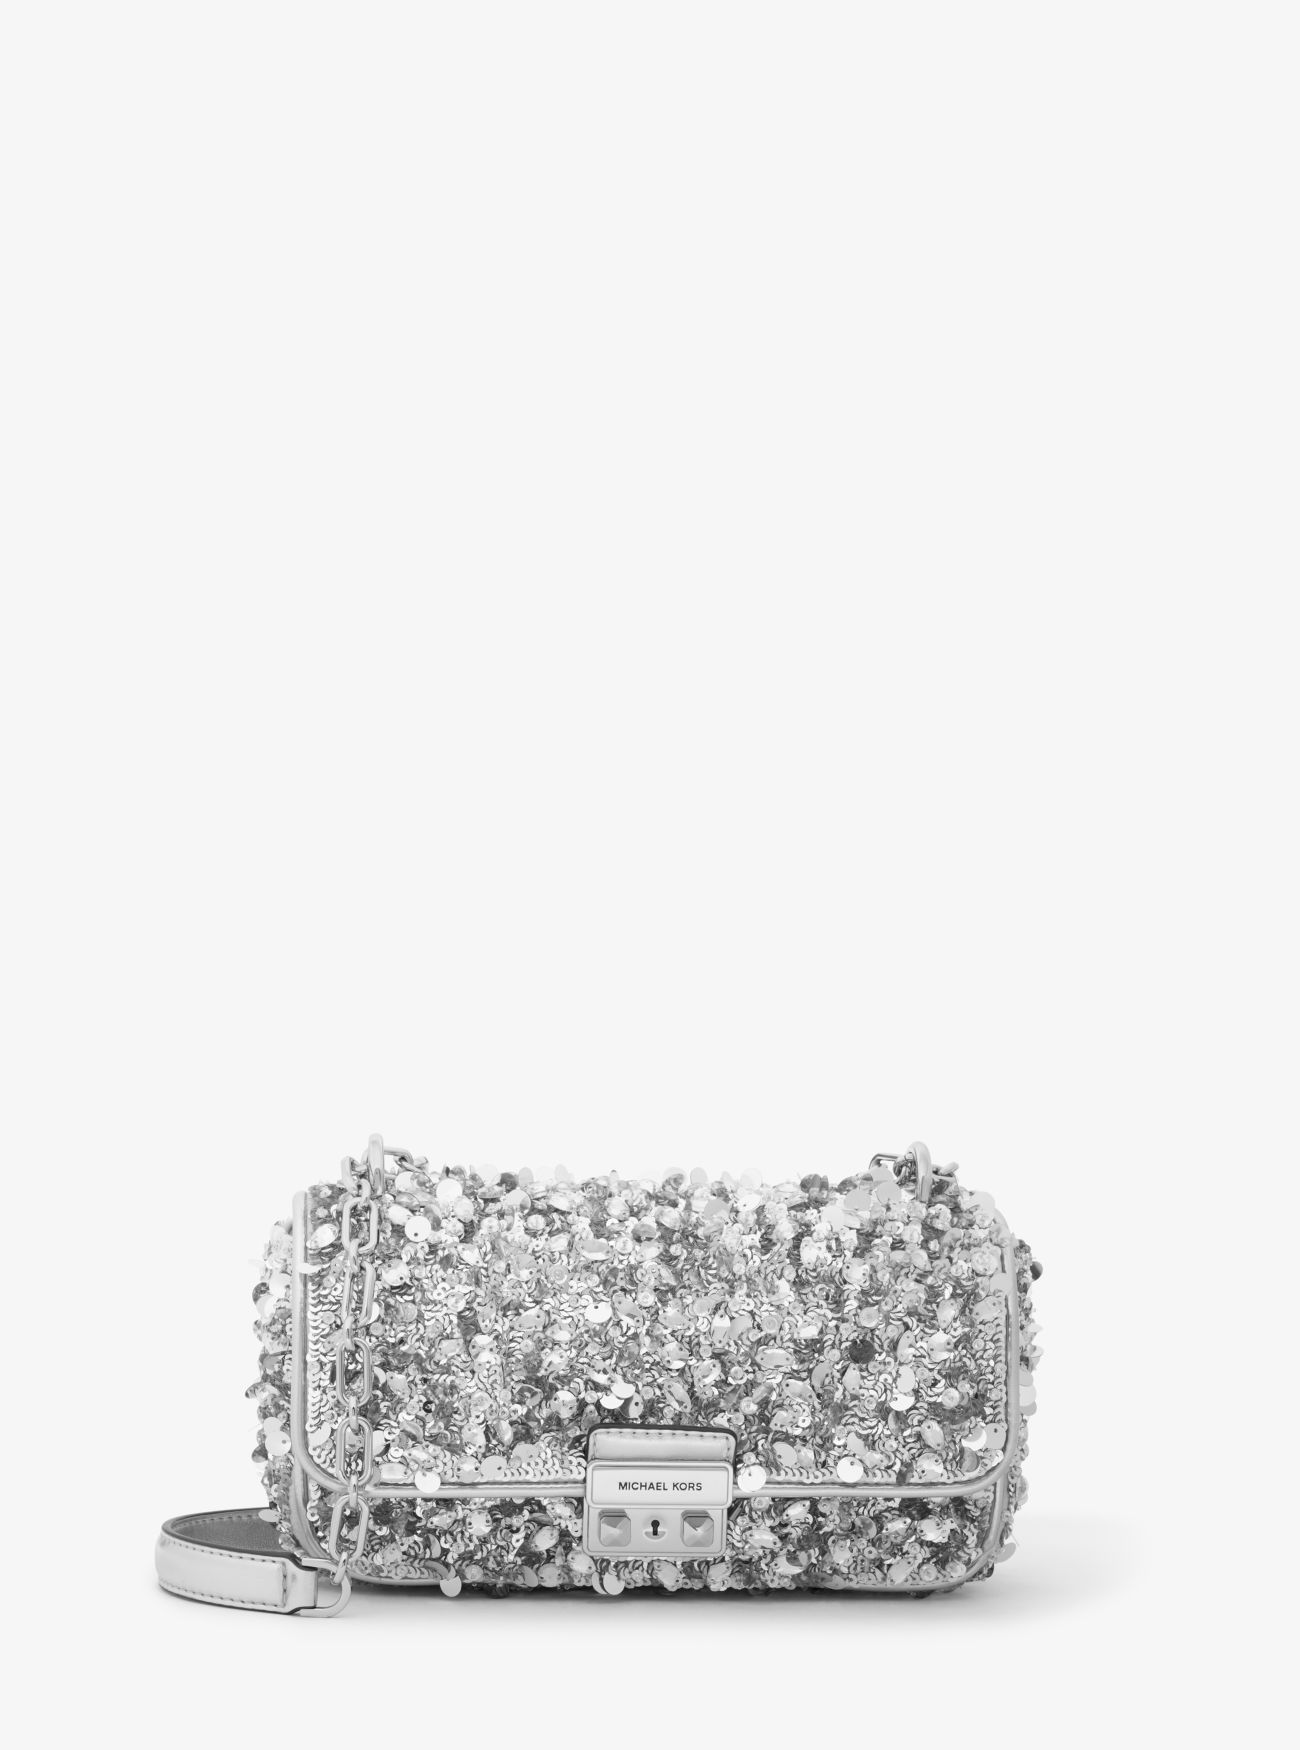 MK Limited-Edition Tribeca Small Hand-Embellished Shoulder Bag - Silver - Michael Kors